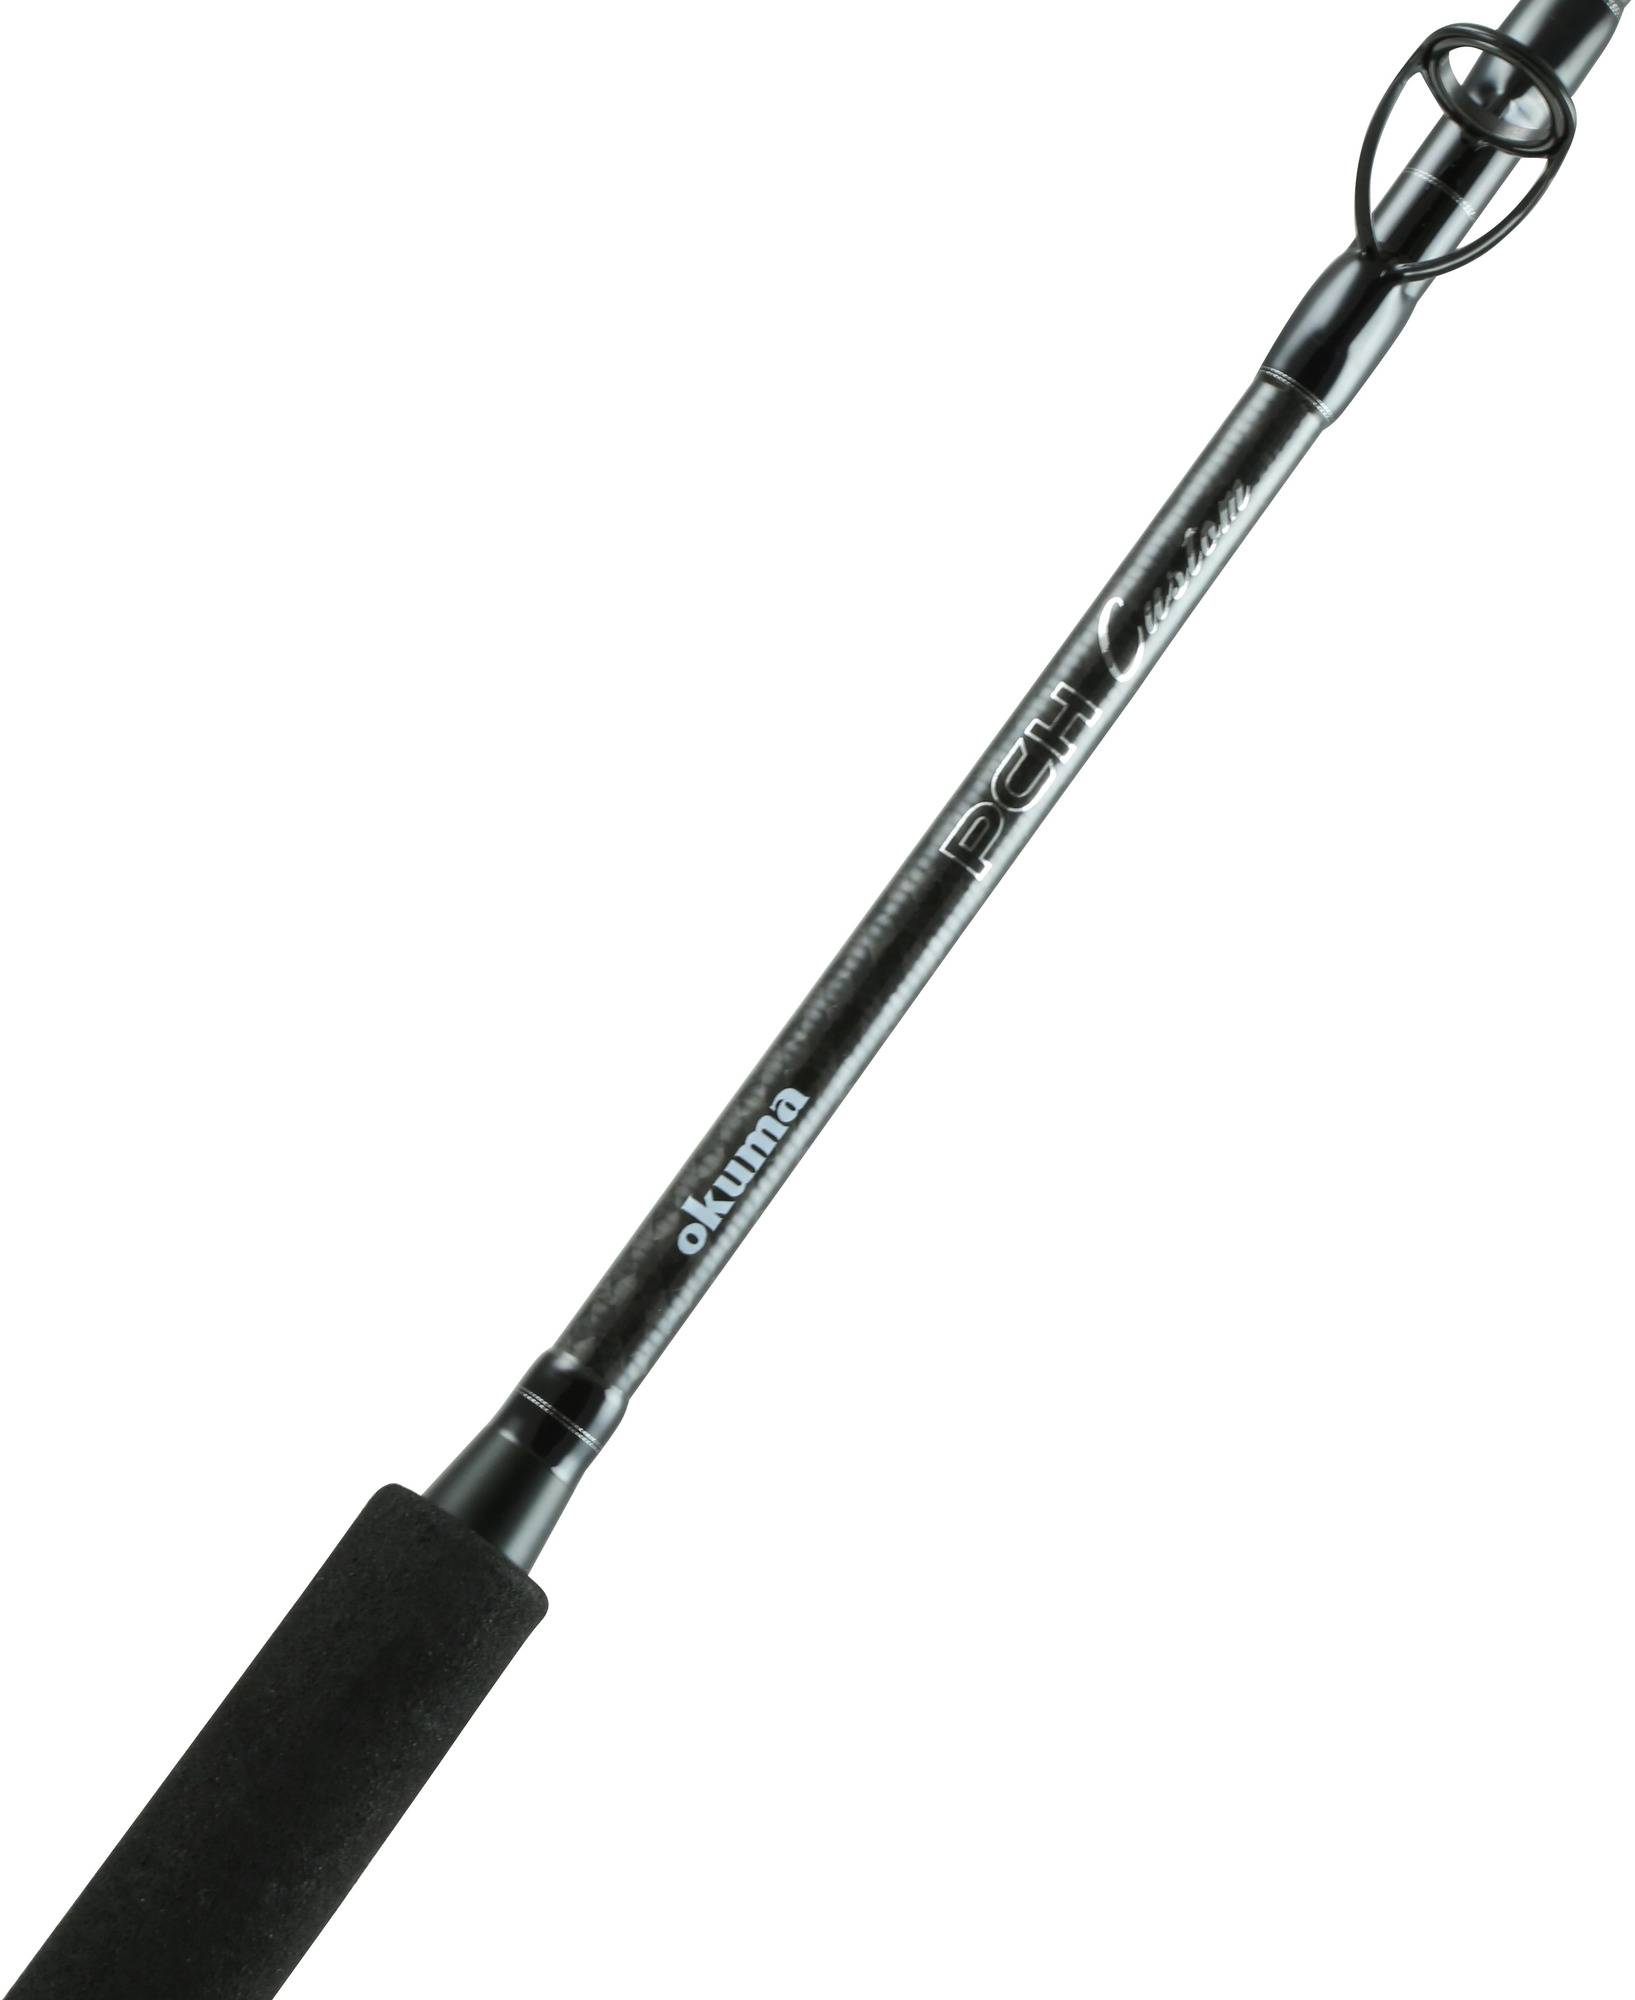 Okuma Pieceh Custom Casting Rod, Extra Heavy 1 Piece, 30-60 lbs